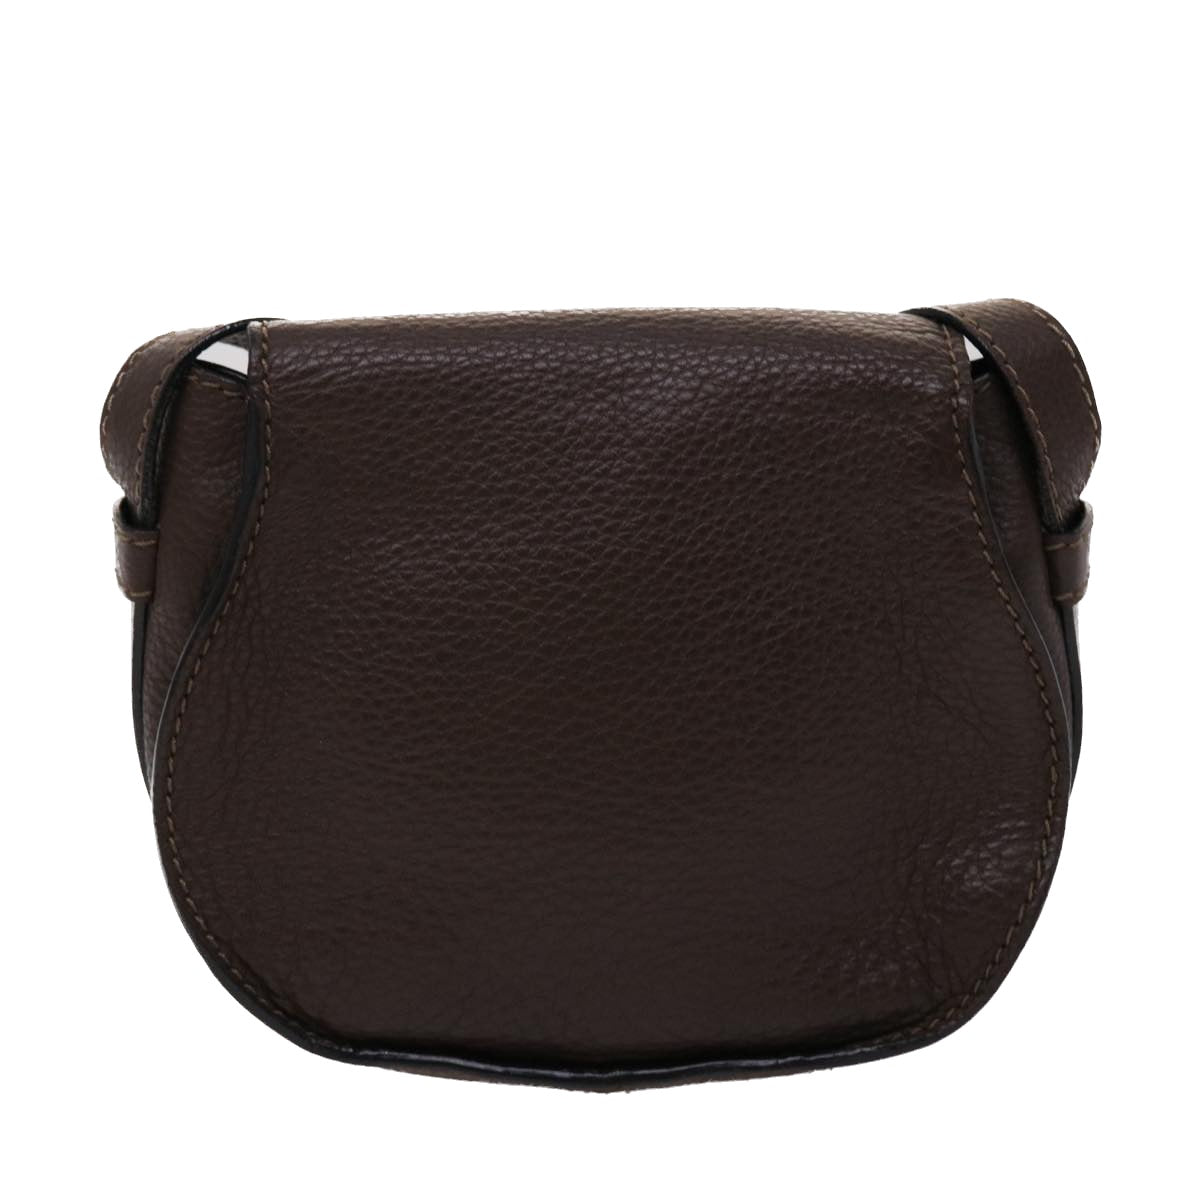 Chloe Saddle Bag Mercy Shoulder Bag Leather Brown Auth 45716 - 0